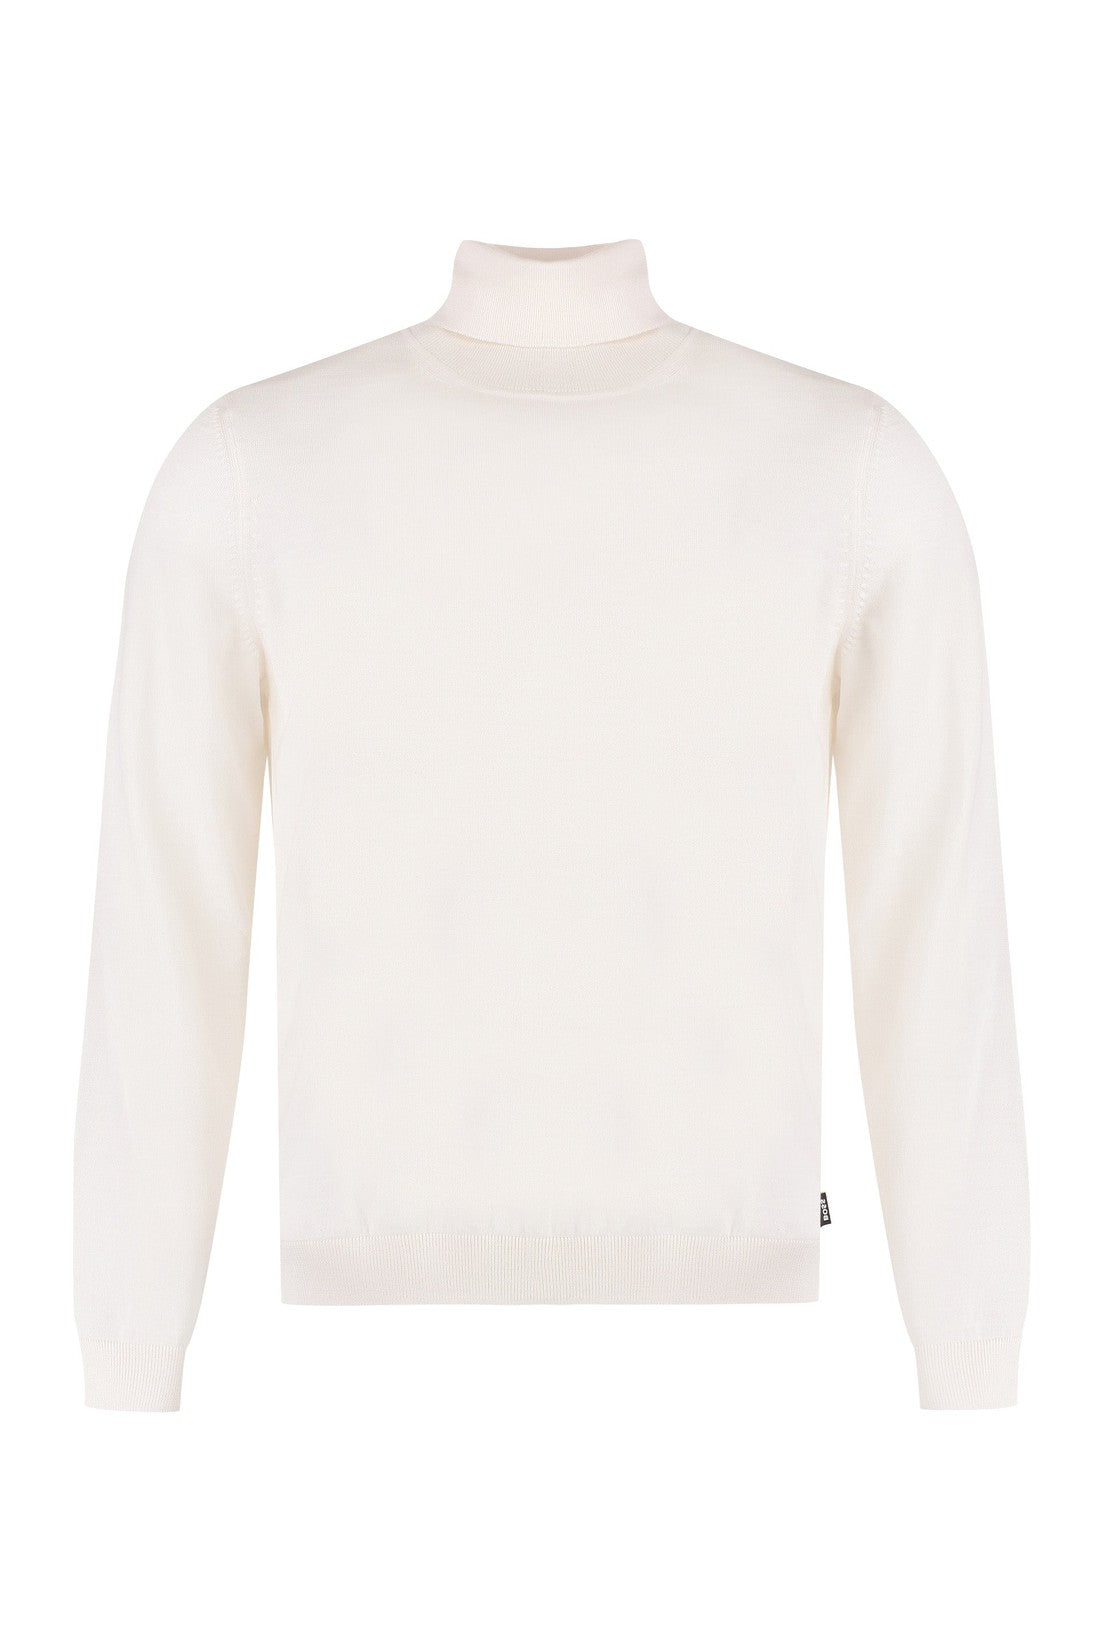 BOSS-OUTLET-SALE-Virgin-wool turtleneck sweater-ARCHIVIST